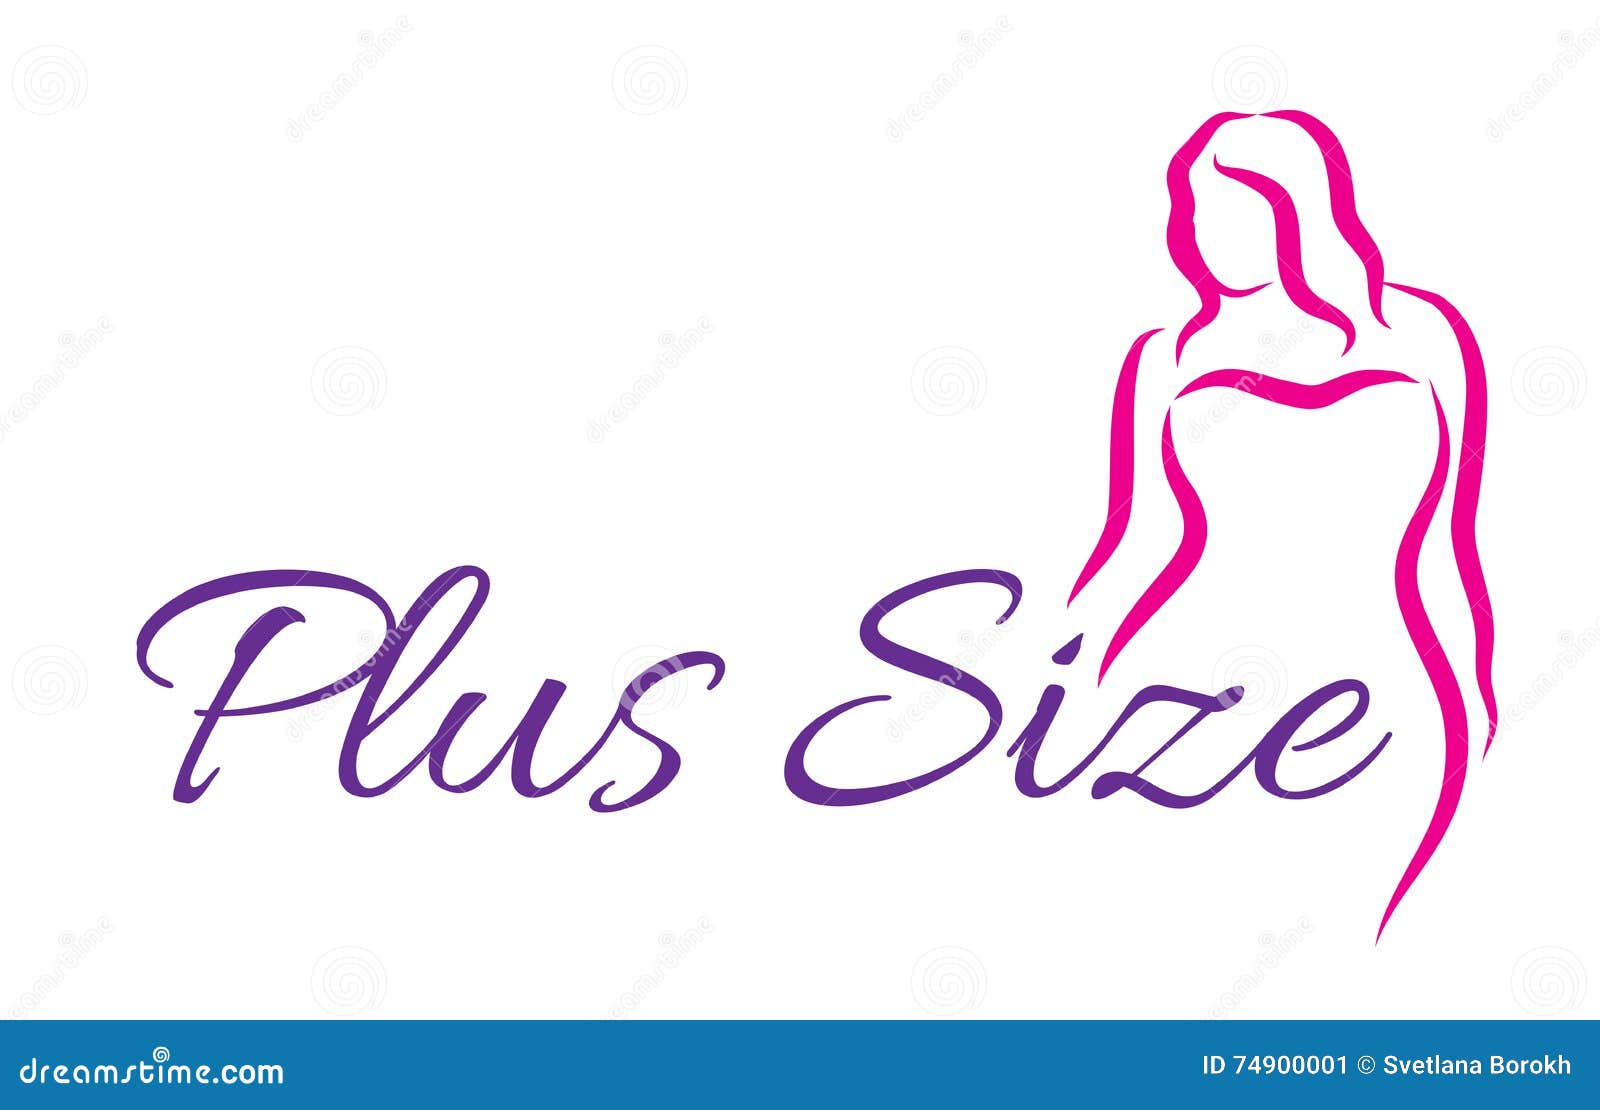 logo plus size woman. curvy woman , logo.  